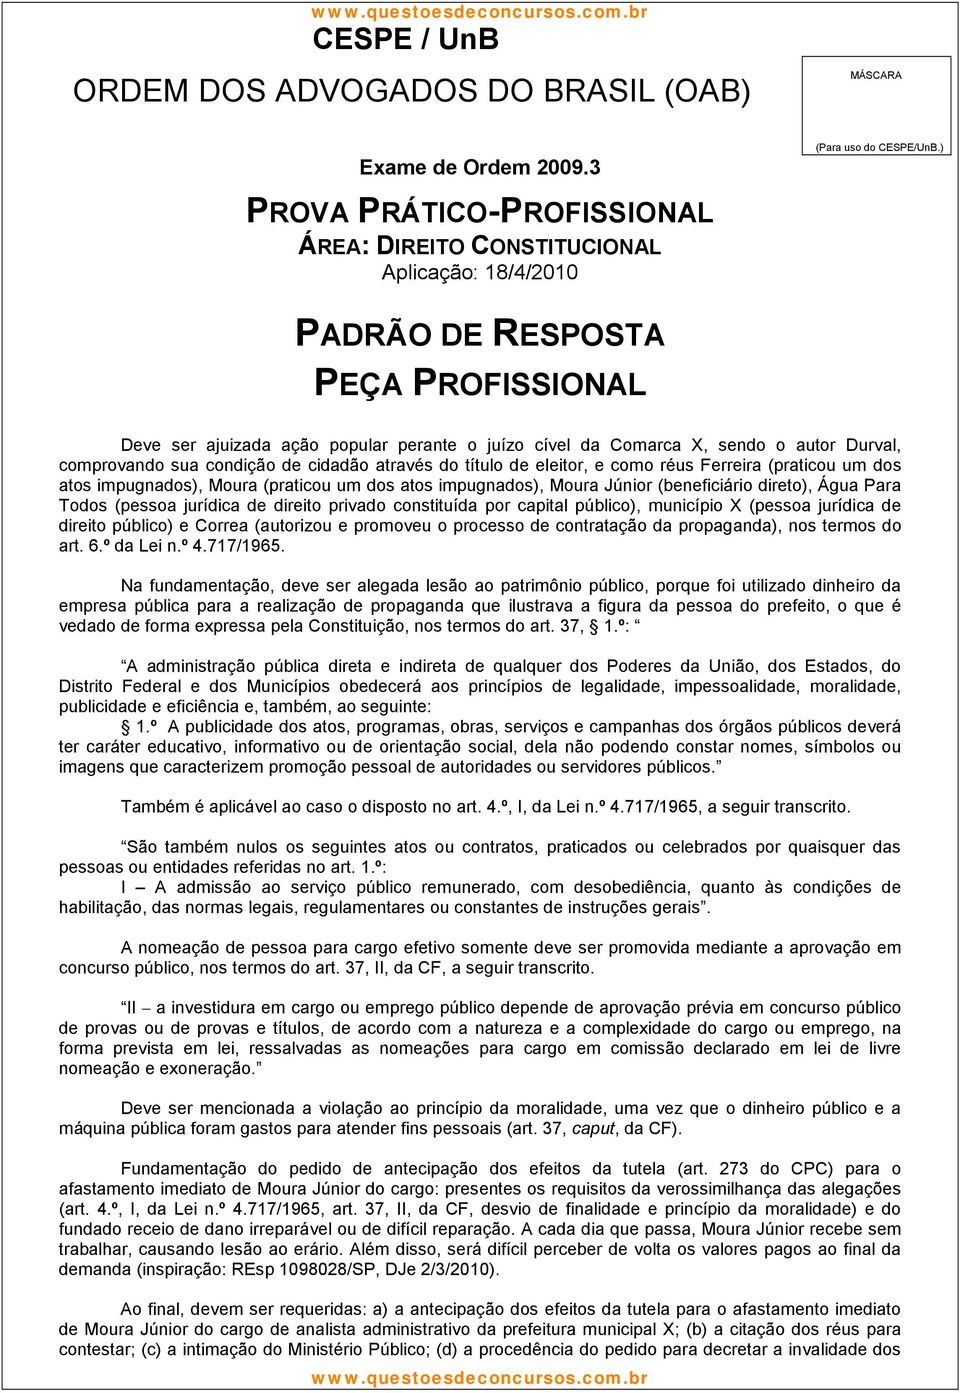 município X (pessoa jurídica de direito público) e Correa (autorizou e promoveu o processo de contratação da propaganda), nos termos do art. 6.º da Lei n.º 4.717/1965.